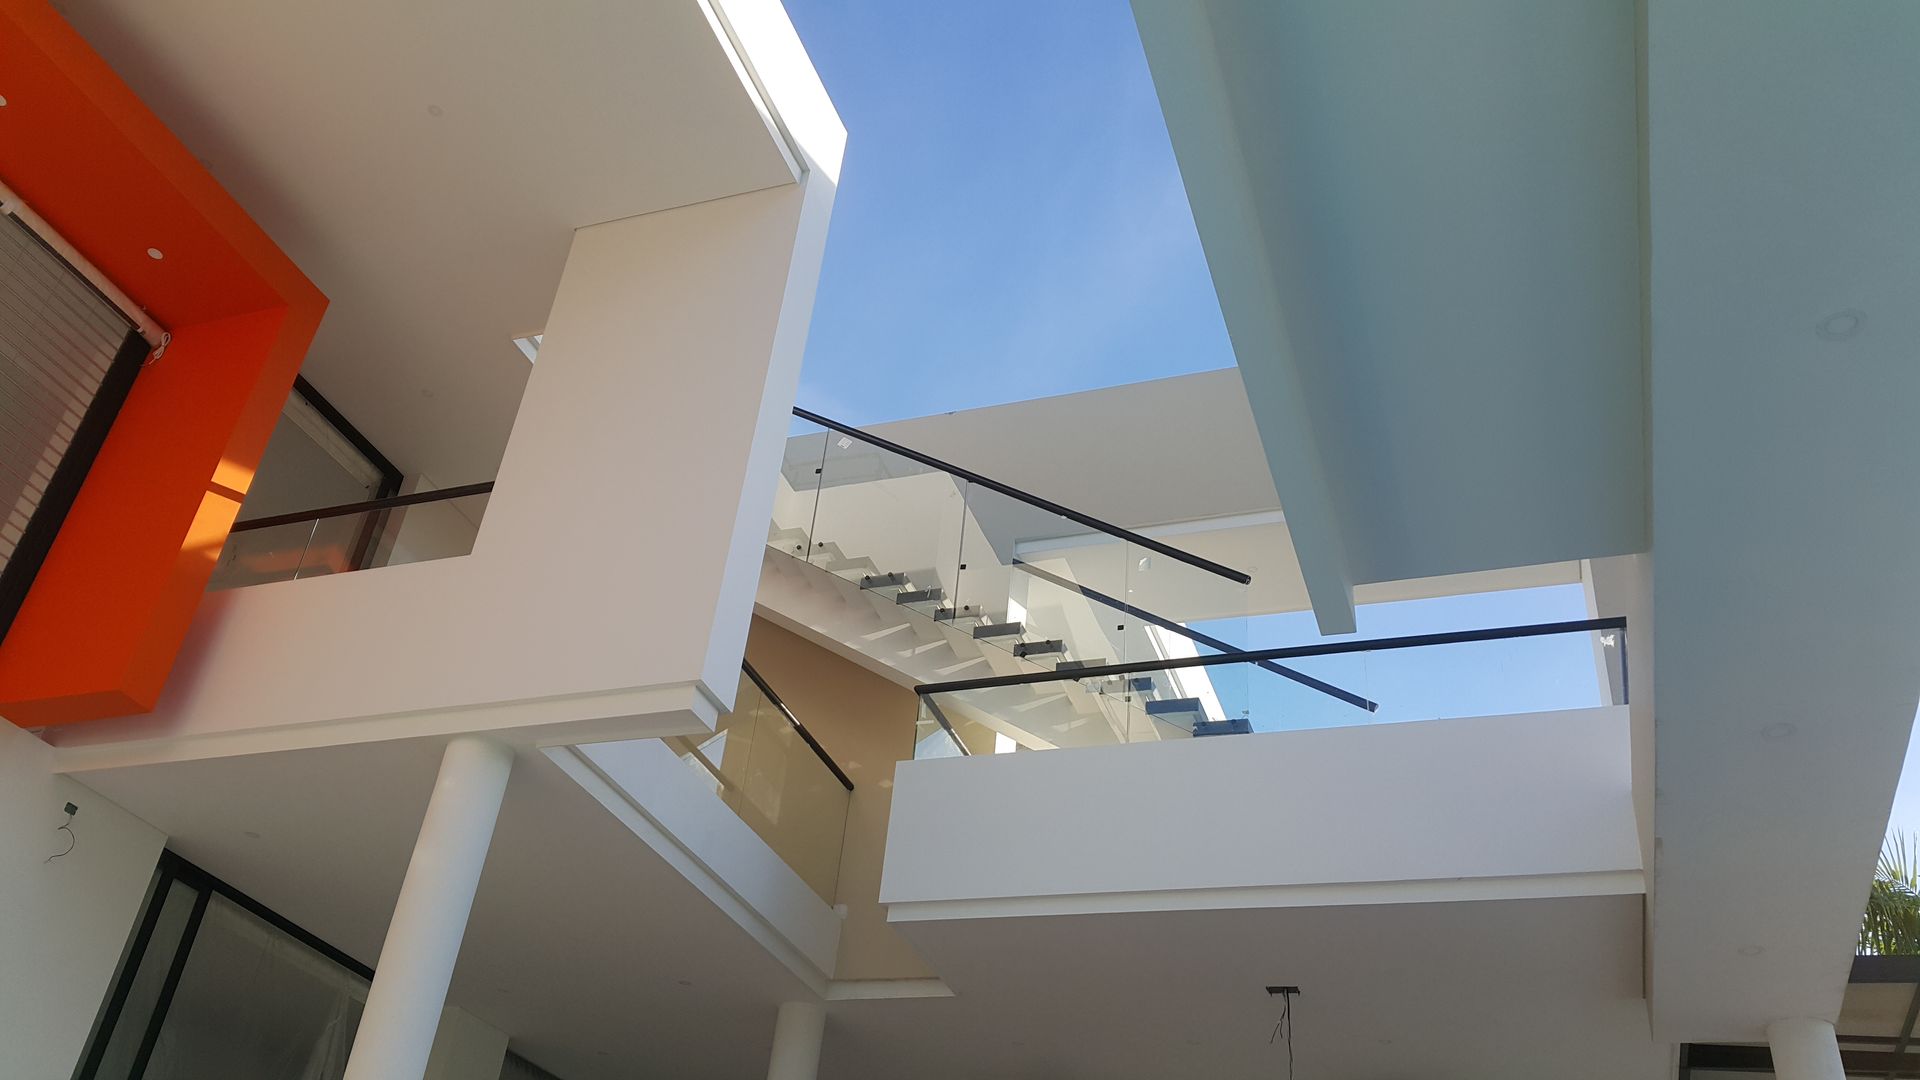 Perspectiva de acceso a terraza mirador homify Casas estilo moderno: ideas, arquitectura e imágenes Concreto